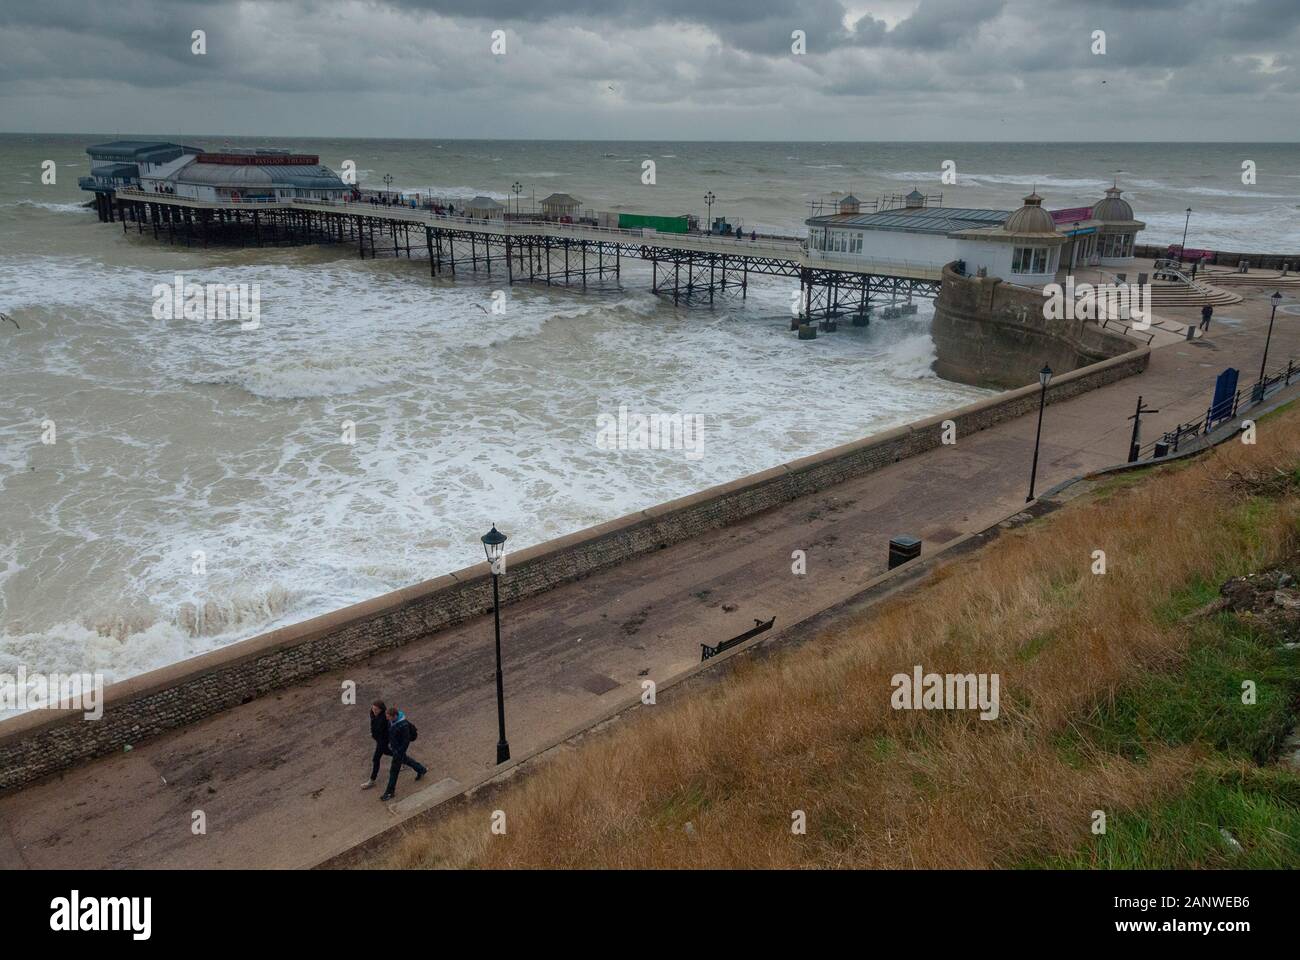 CROMER, Regno Unito - 13 ott 2013 - tempeste round Cromer Pier a CROMER Inghilterra NORFOLK REGNO UNITO Foto Stock